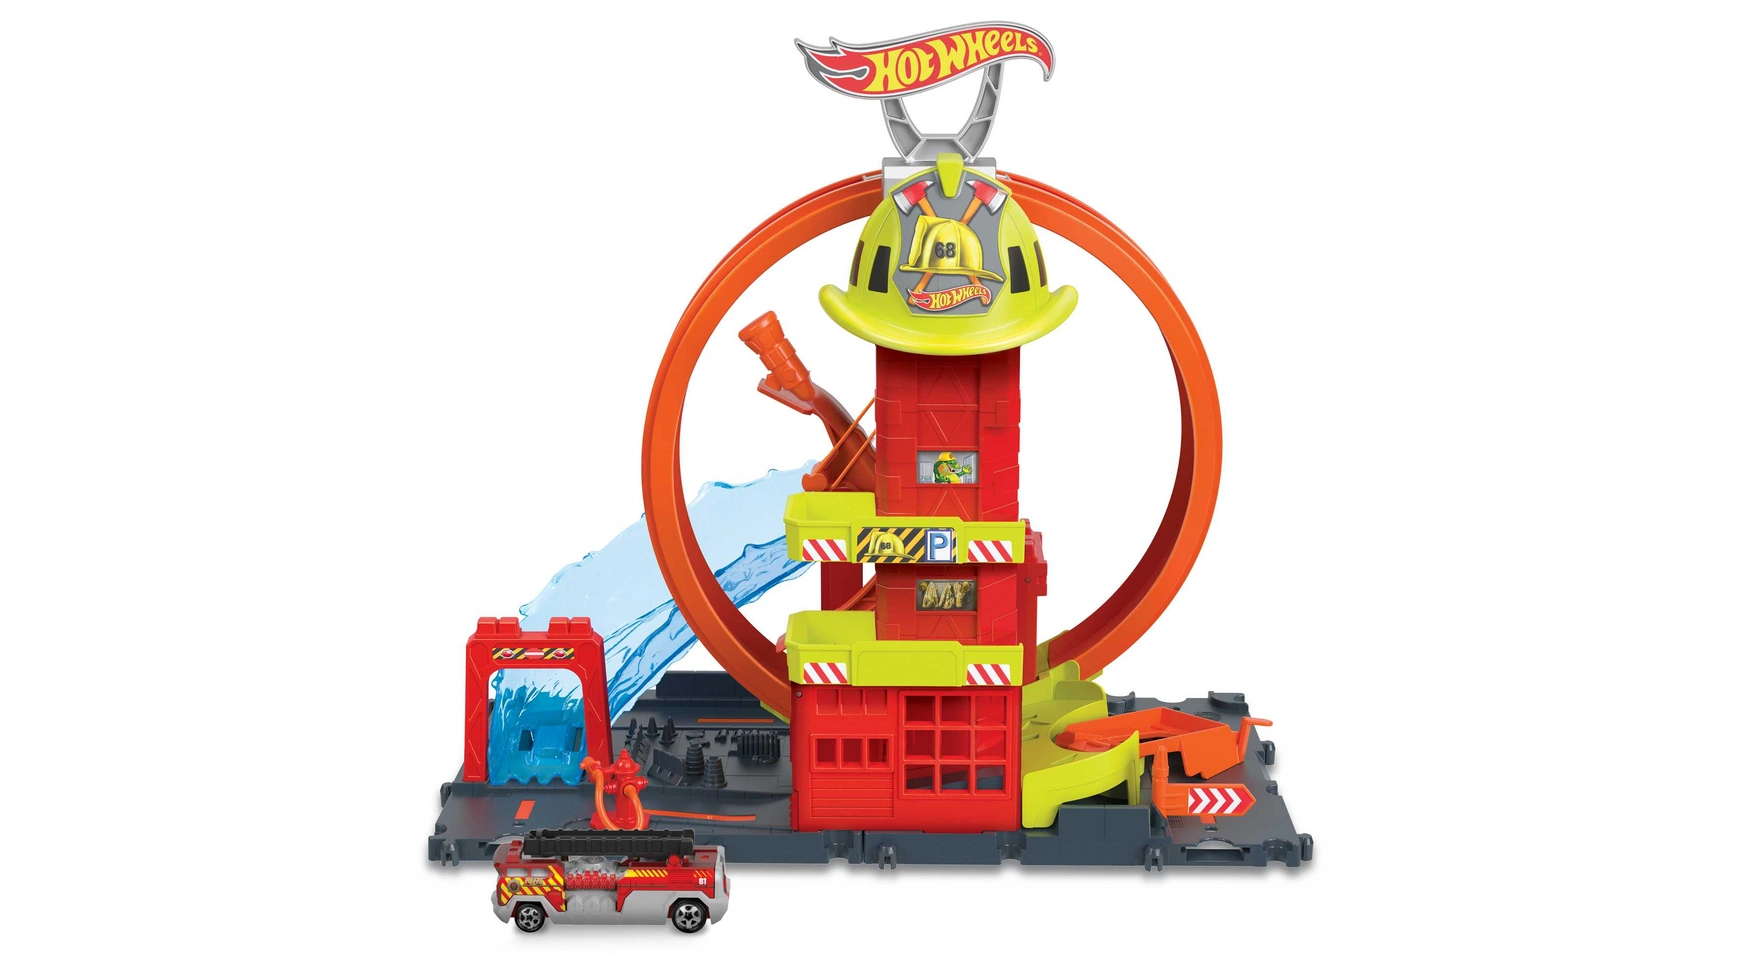 Hot wheels city super looping пожарная станция Mattel игровой набор hot wheels праздничная коробка